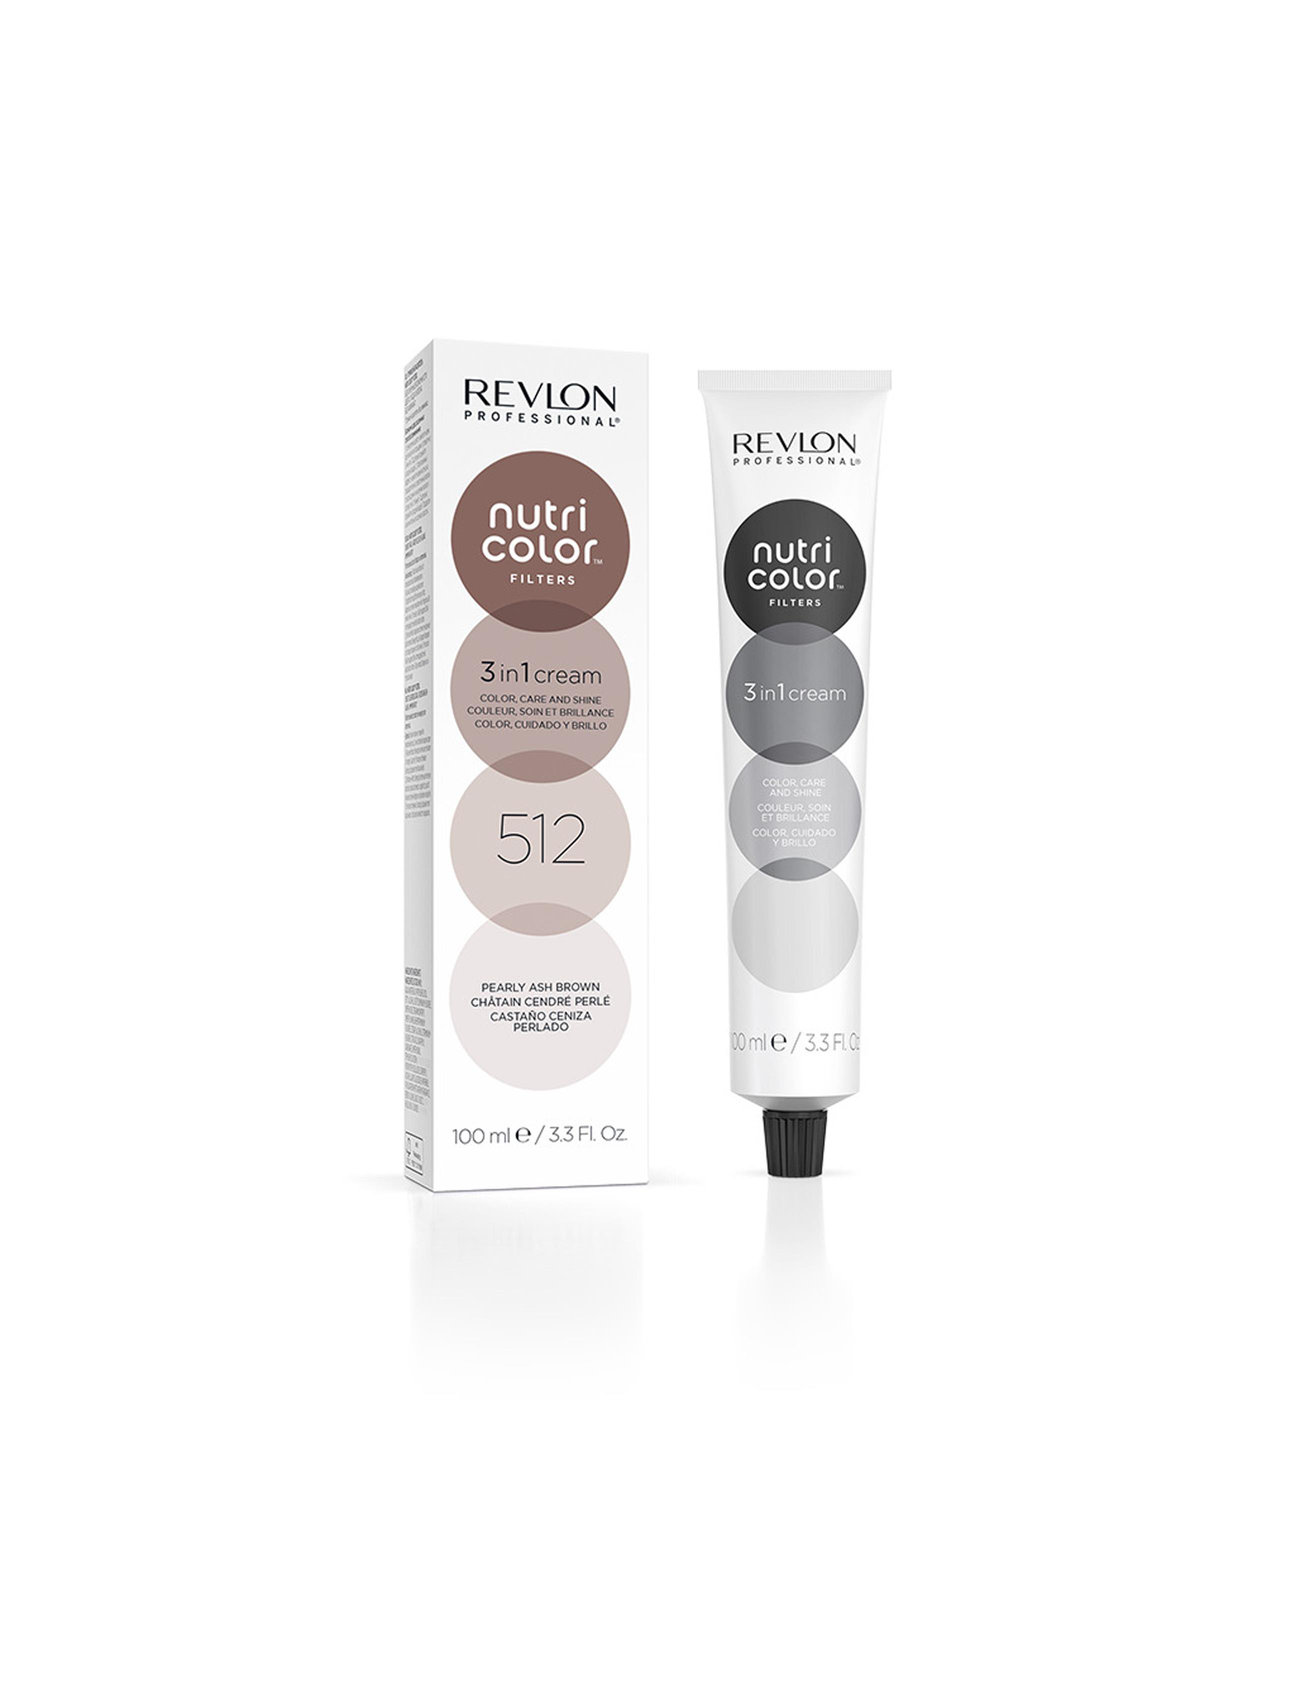 "Revlon Professional" "Nutri Color Filters 512 Beauty Women Hair Care Treatments Nude Revlon